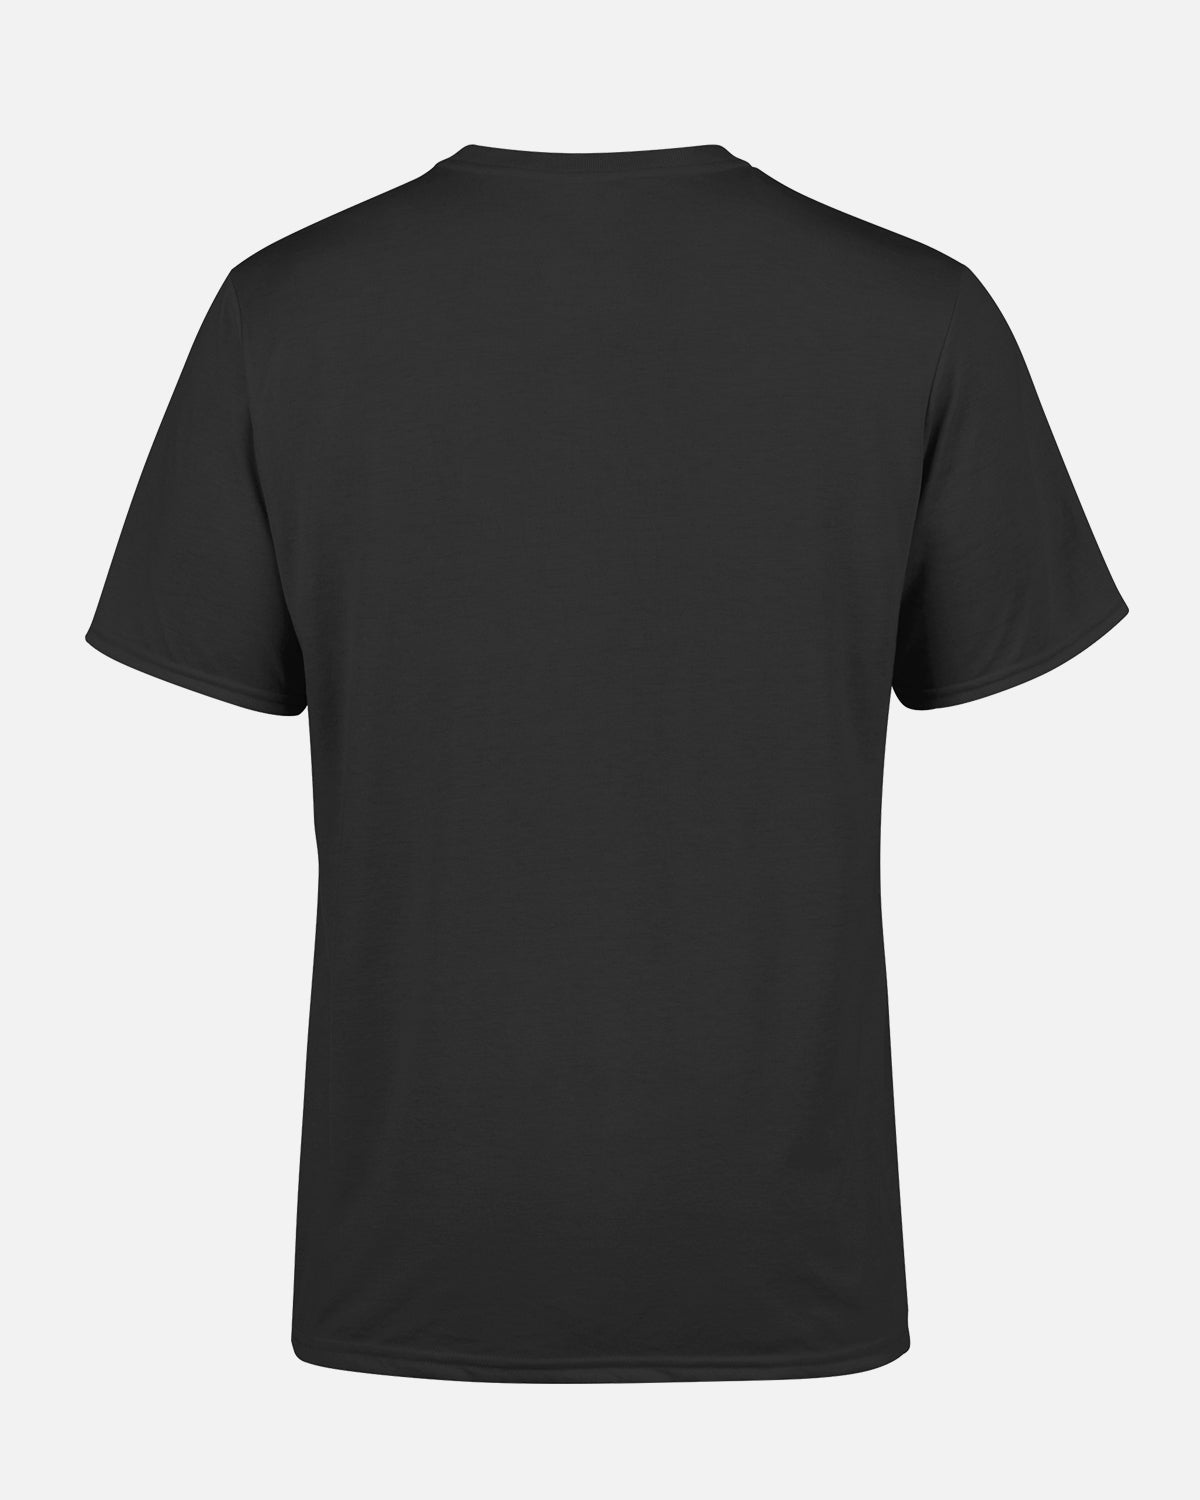 NFFC Black Clough Stand Photo Print T-Shirt